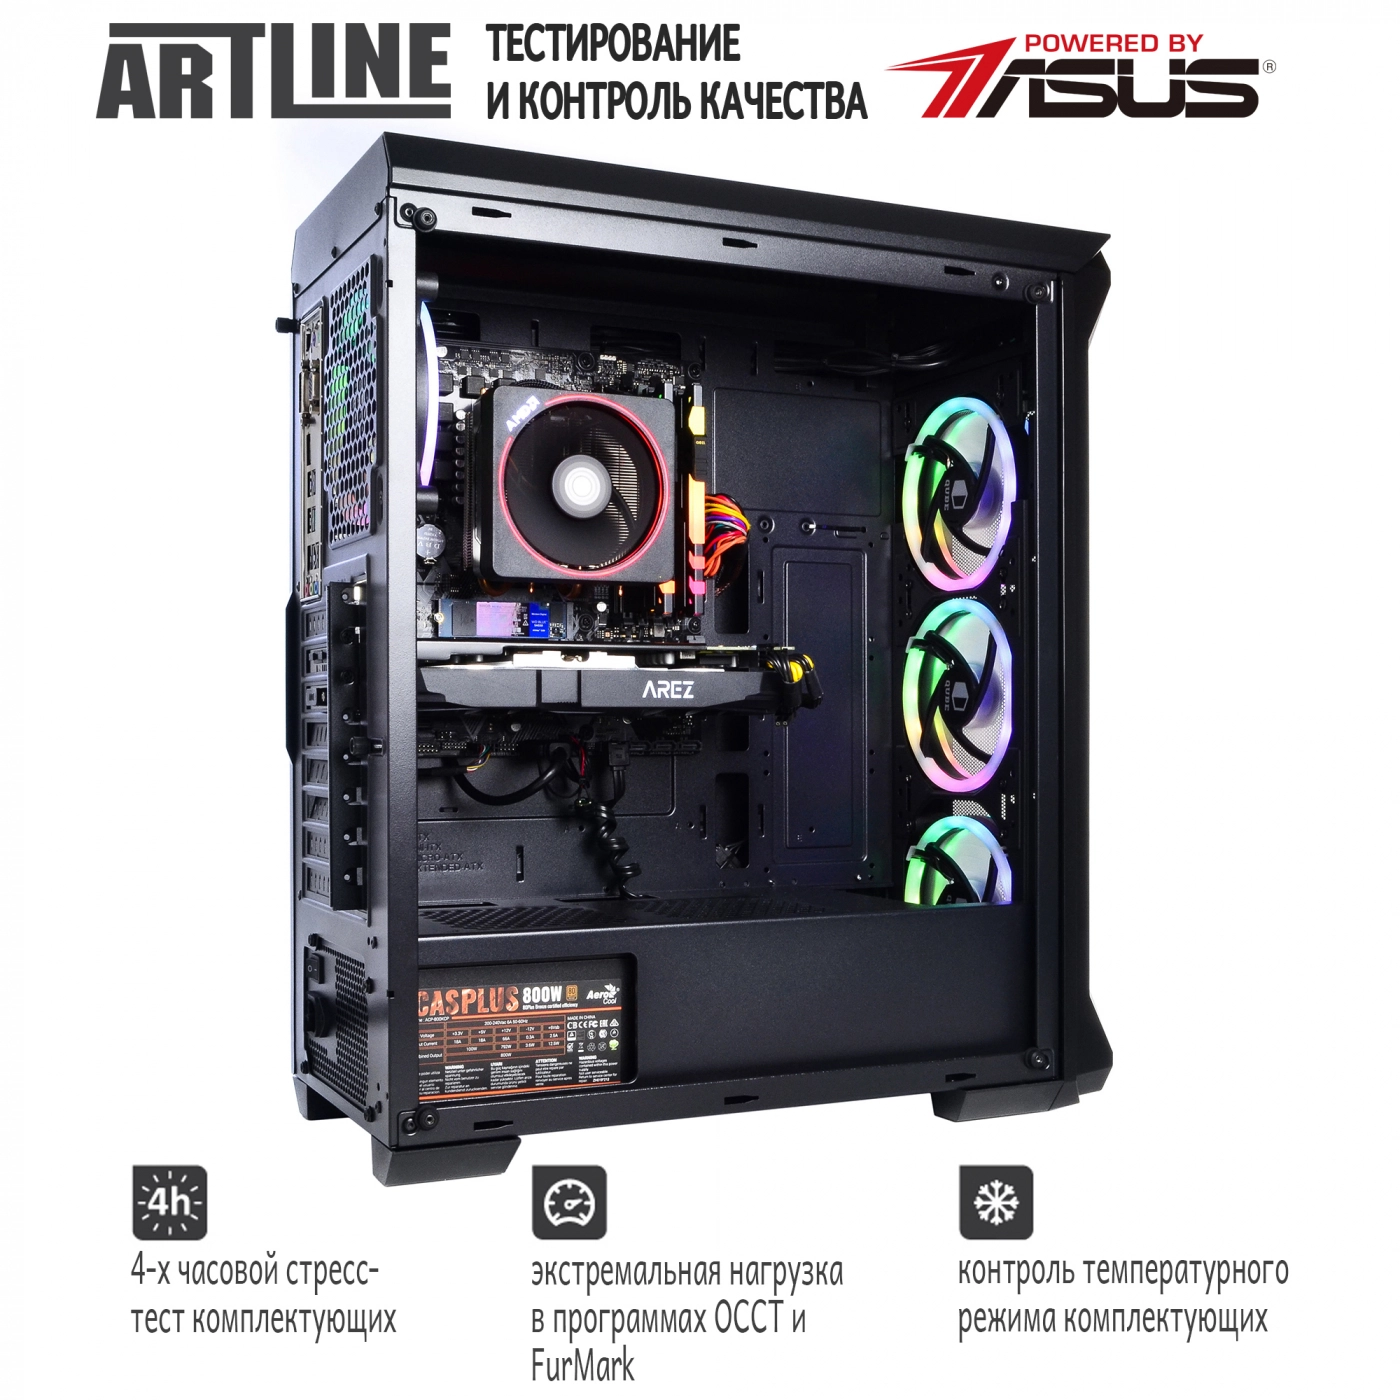 Купить Компьютер ARTLINE Gaming X65v21 - фото 6